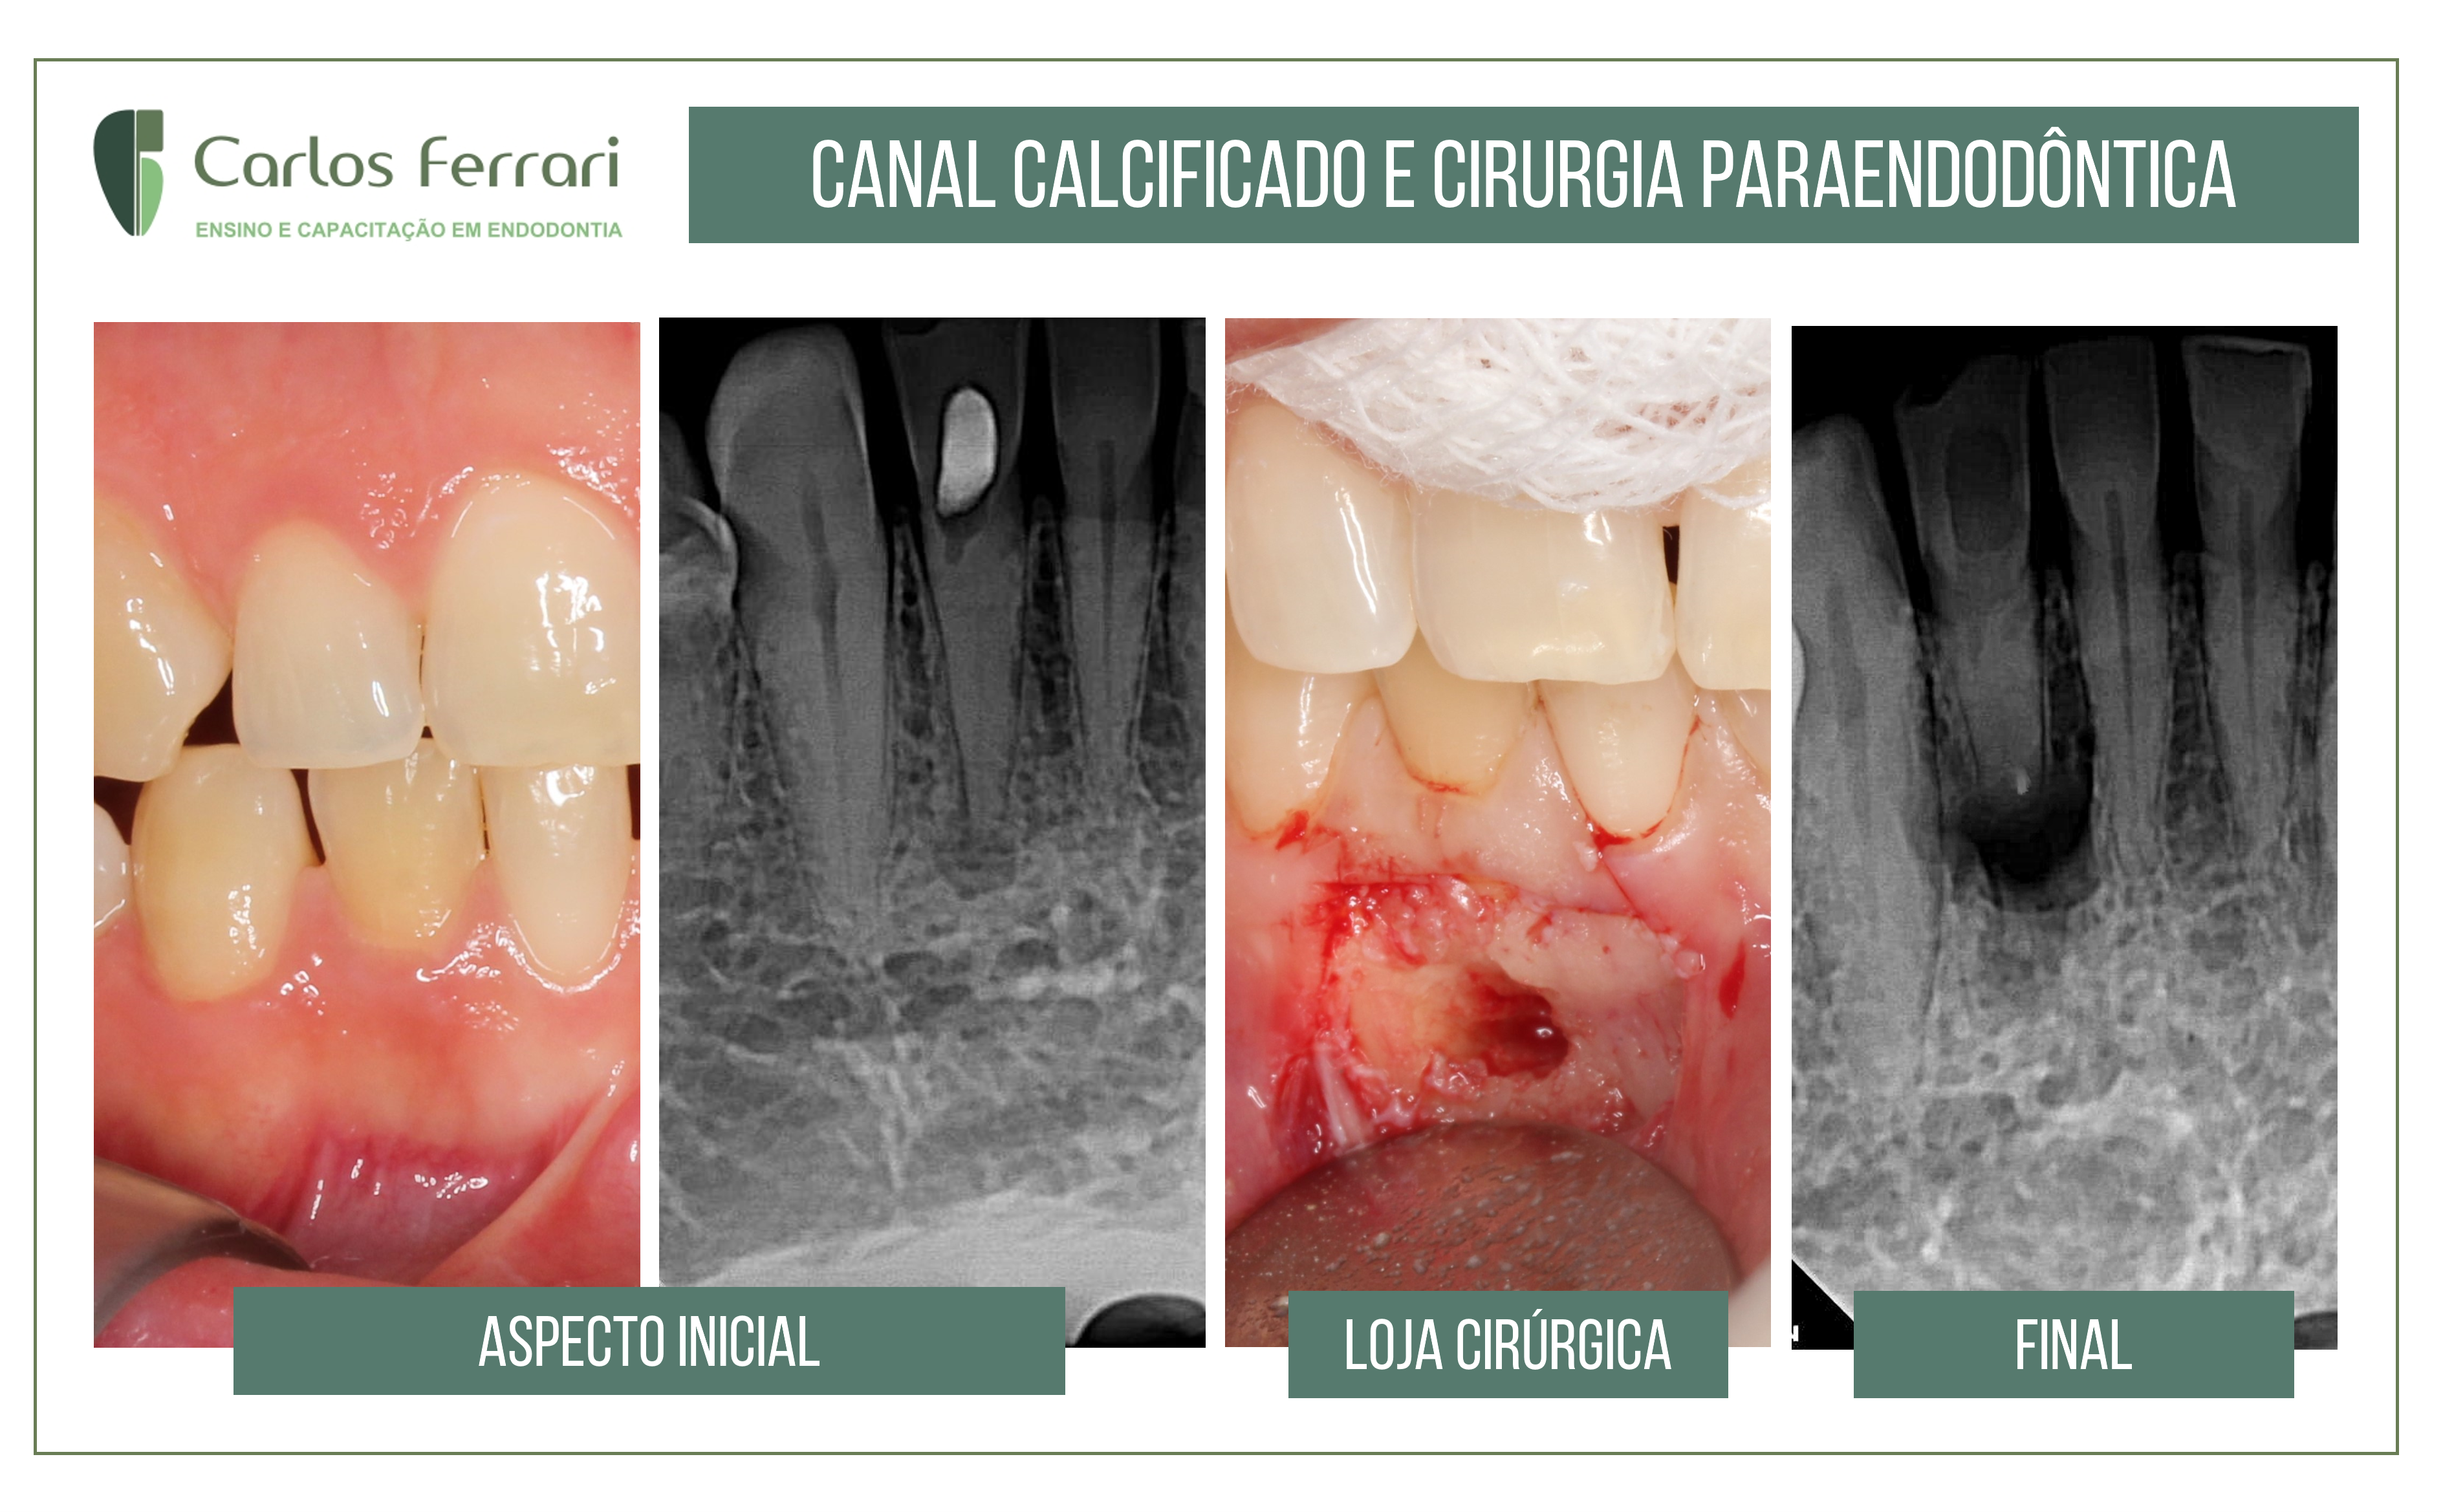 您目前正在查看钙化管的牙髓手术。